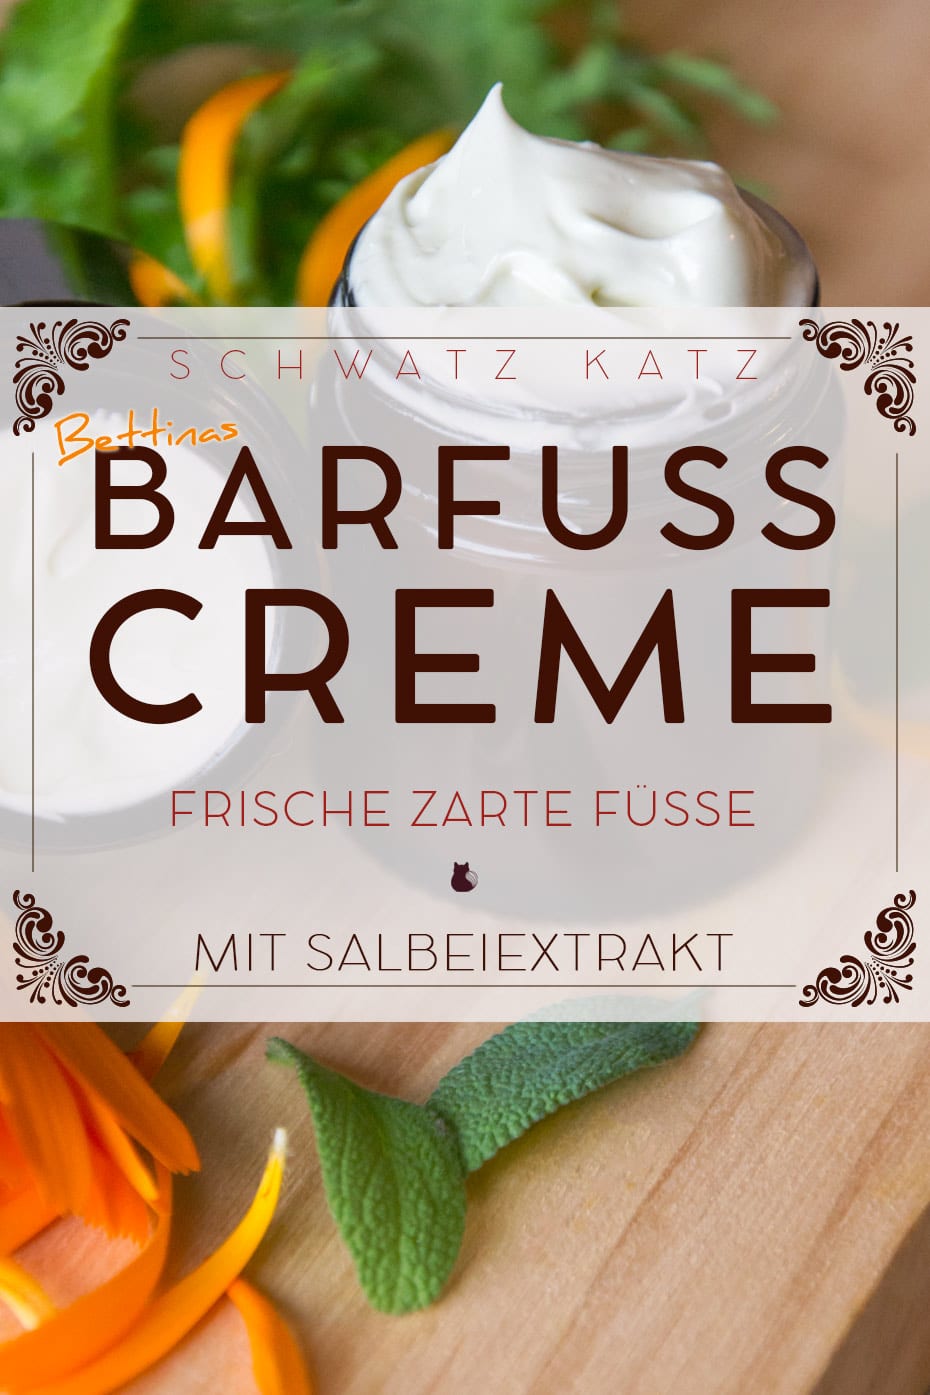 Barfuß Creme im Cold-Cream-Style für frische und zarte Frühlingsfüße